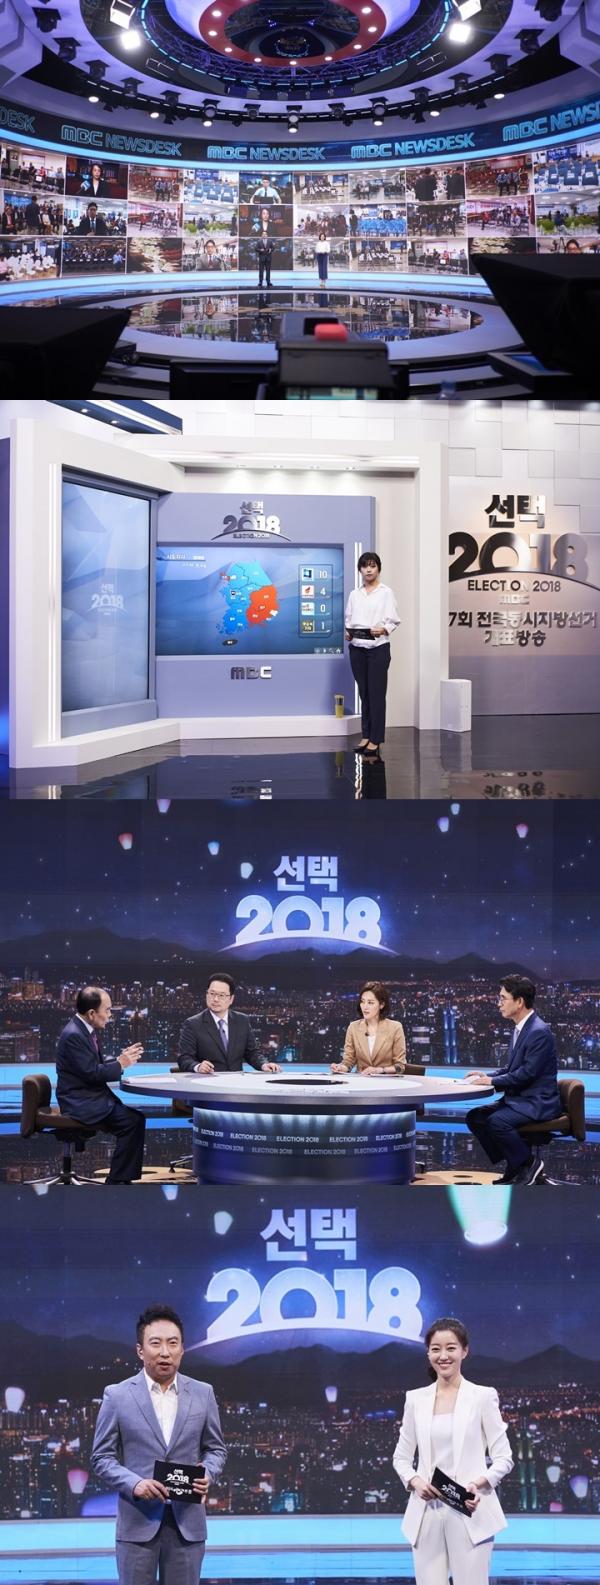 ▲ "선택2018" 개표 방송은 역시 MBC... 당선자 윤곽이 드러나기 시작한 '선택 2018, 국민의 심부름' 2부 시청률 6.7%로 동시간대 1위!